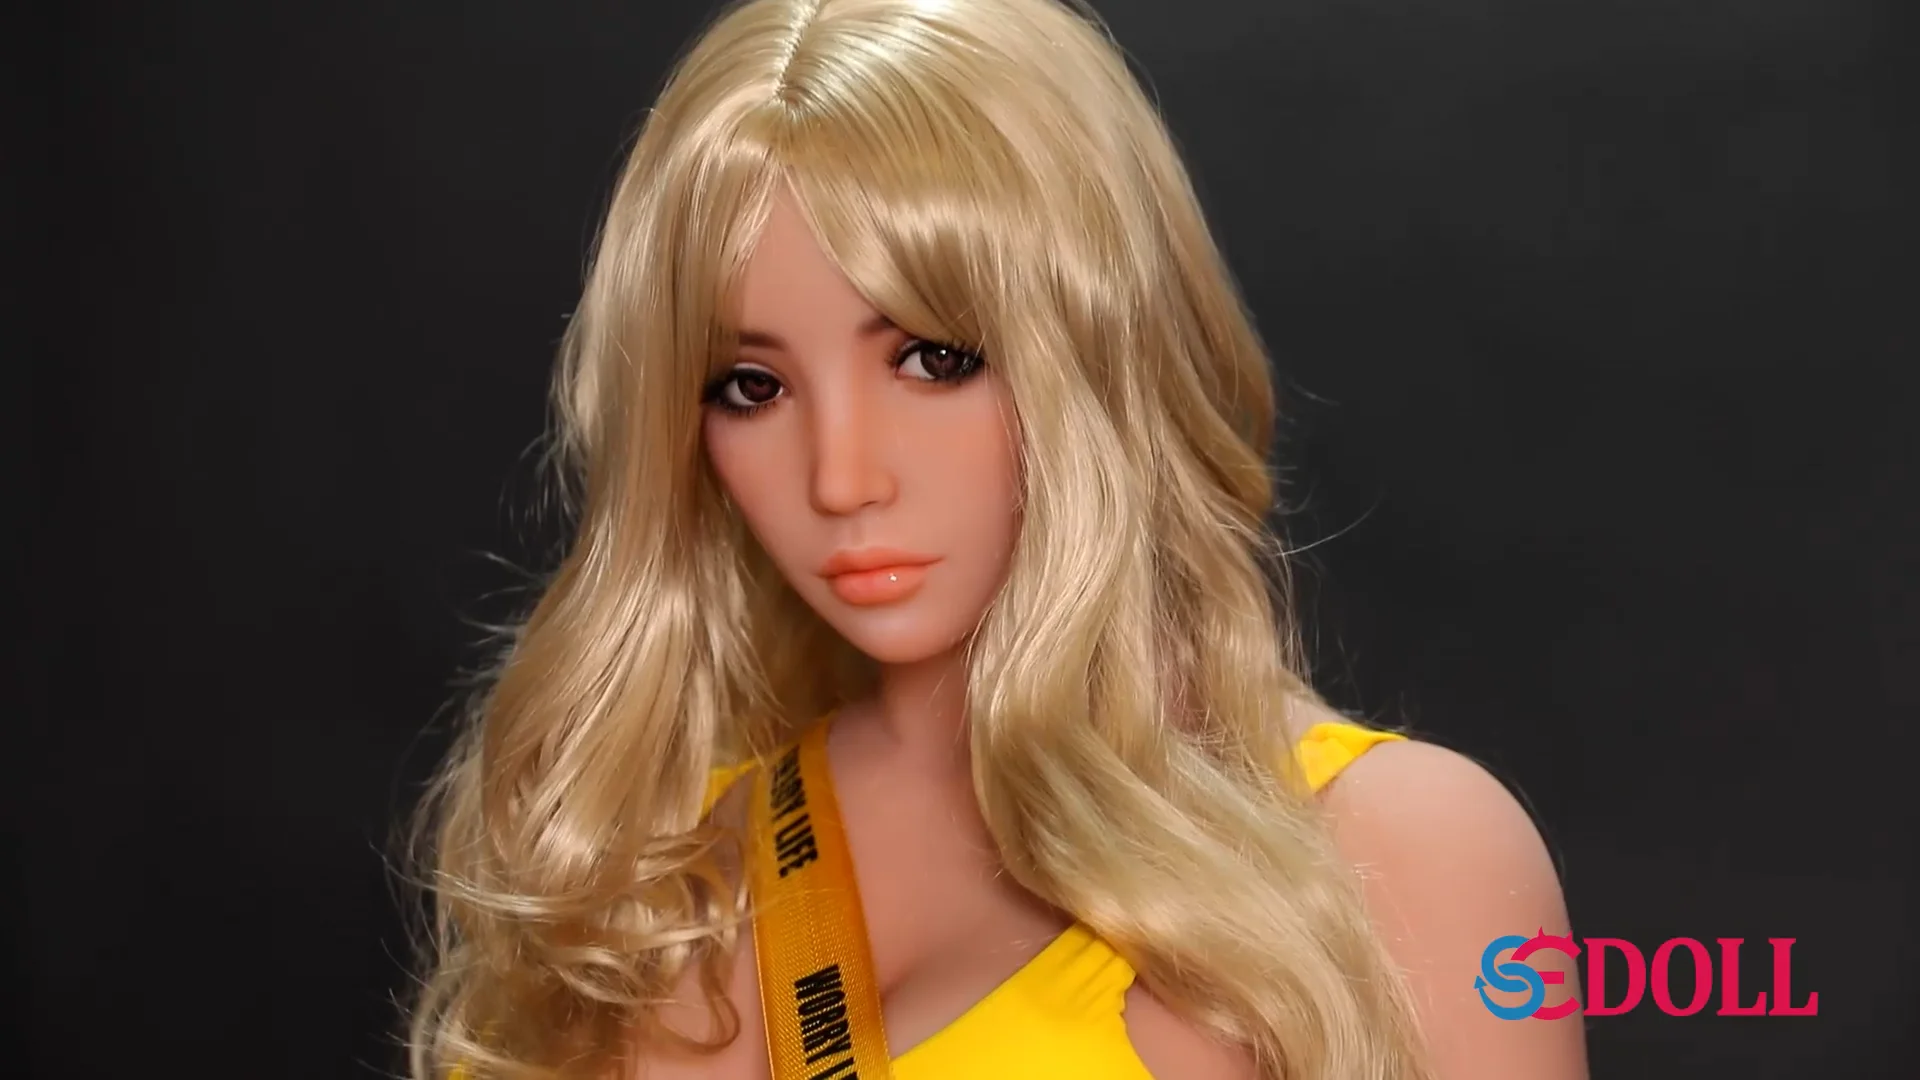 53 161cm F Cup Blonde Girl Sex Doll Jenny Se Doll On Vimeo